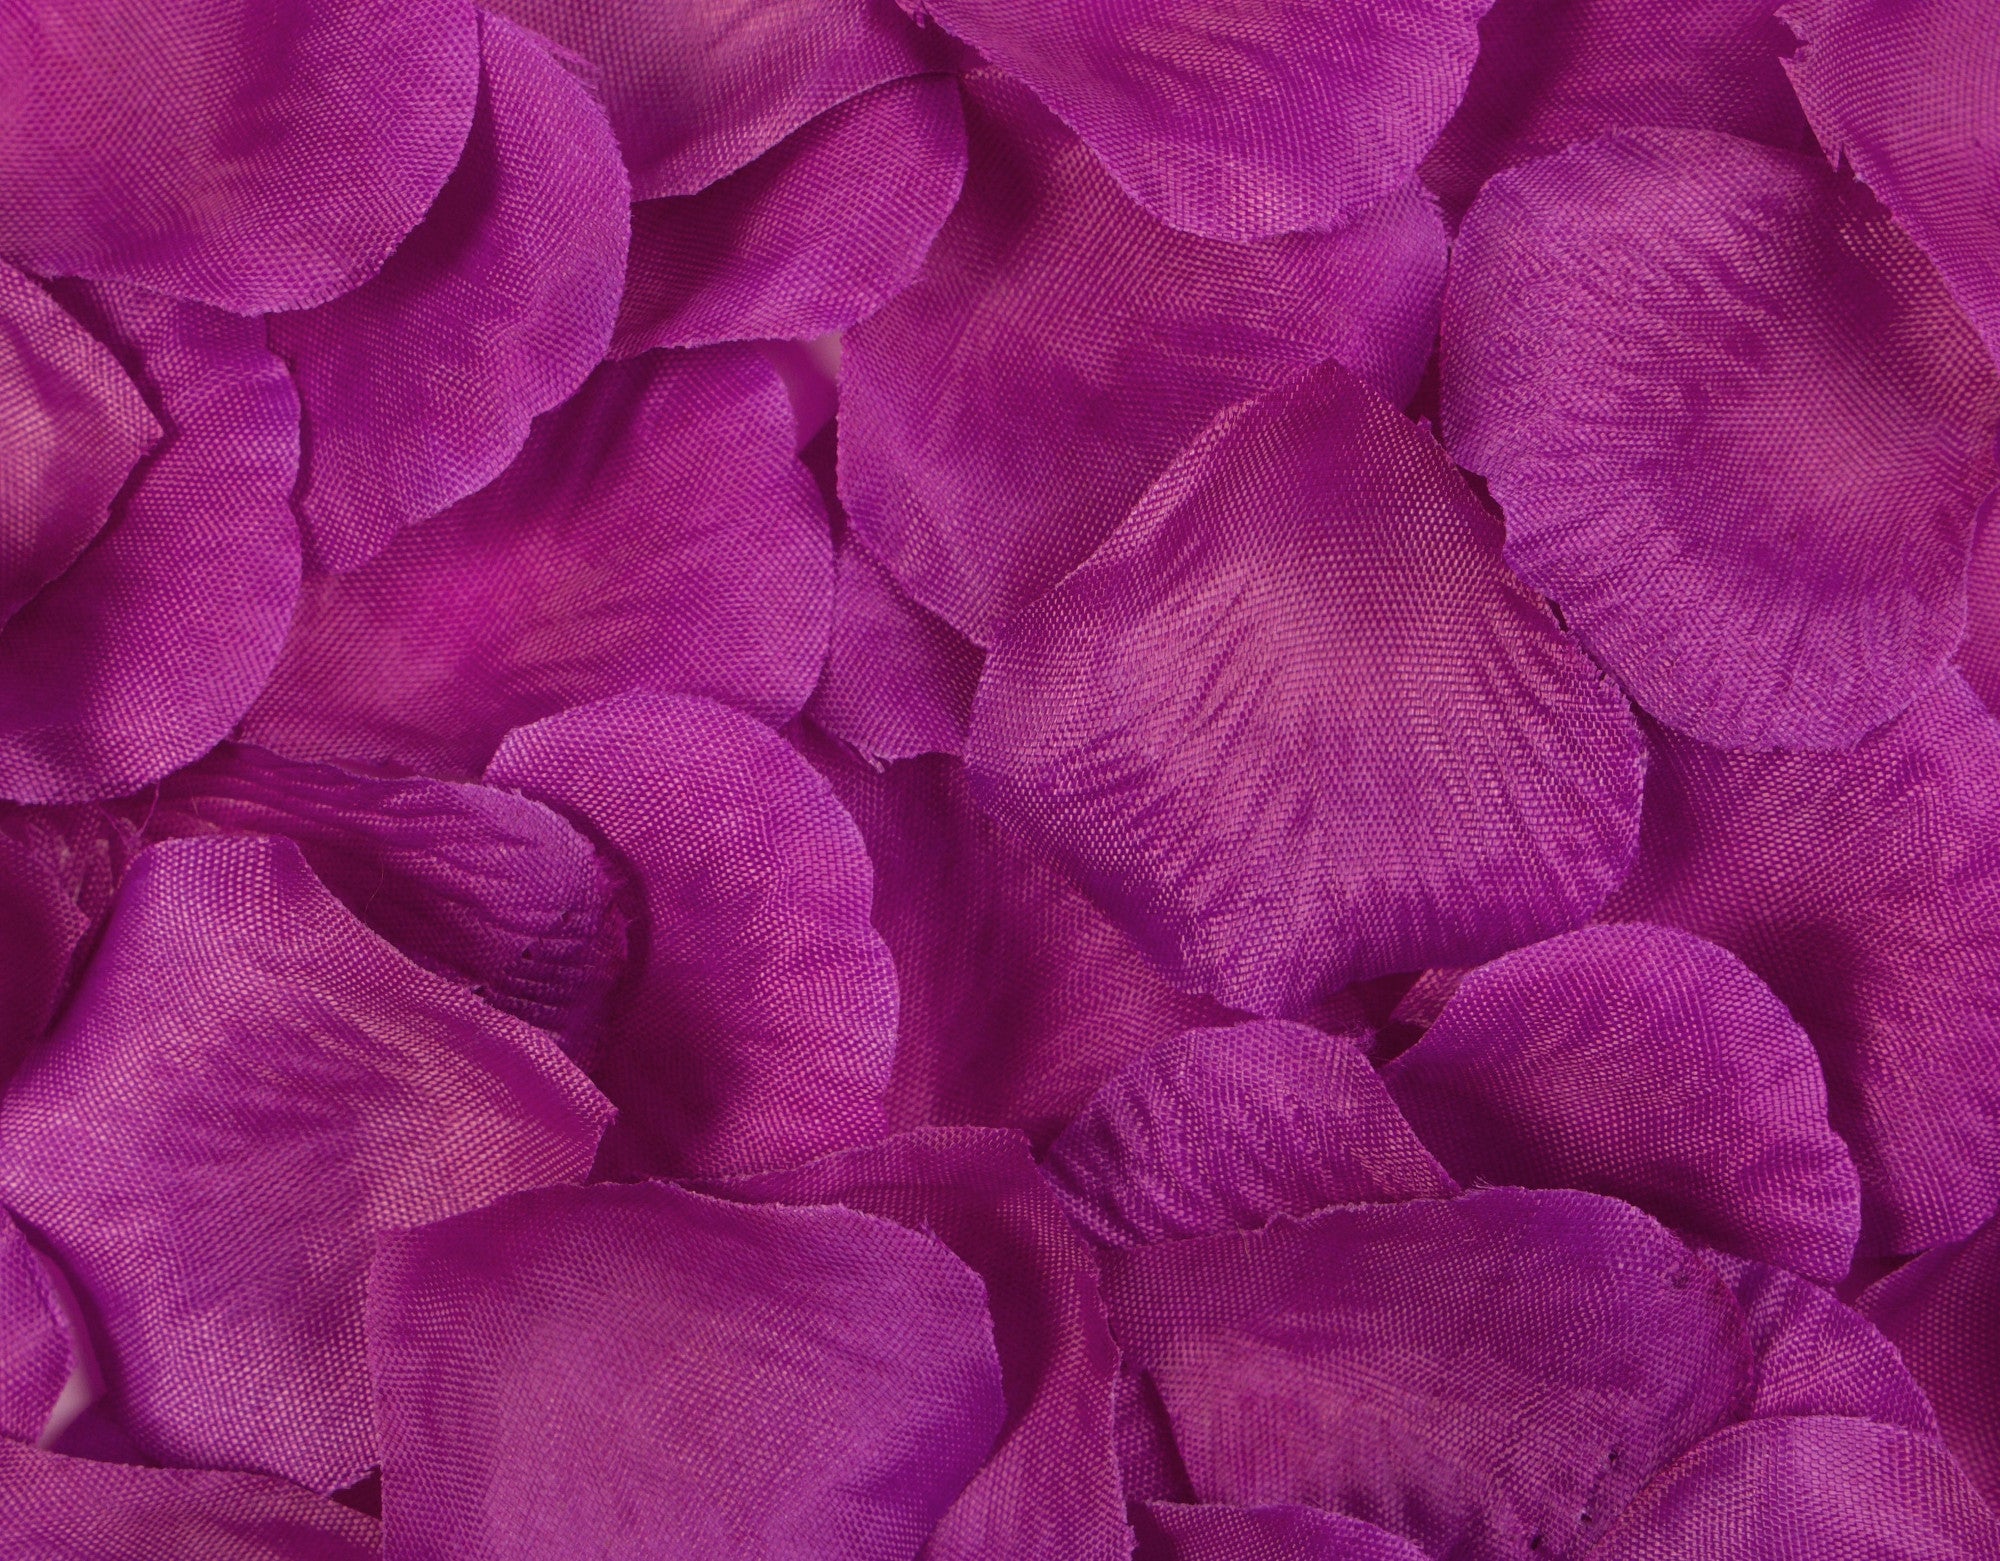 Best Artificial Silk Rose Petals